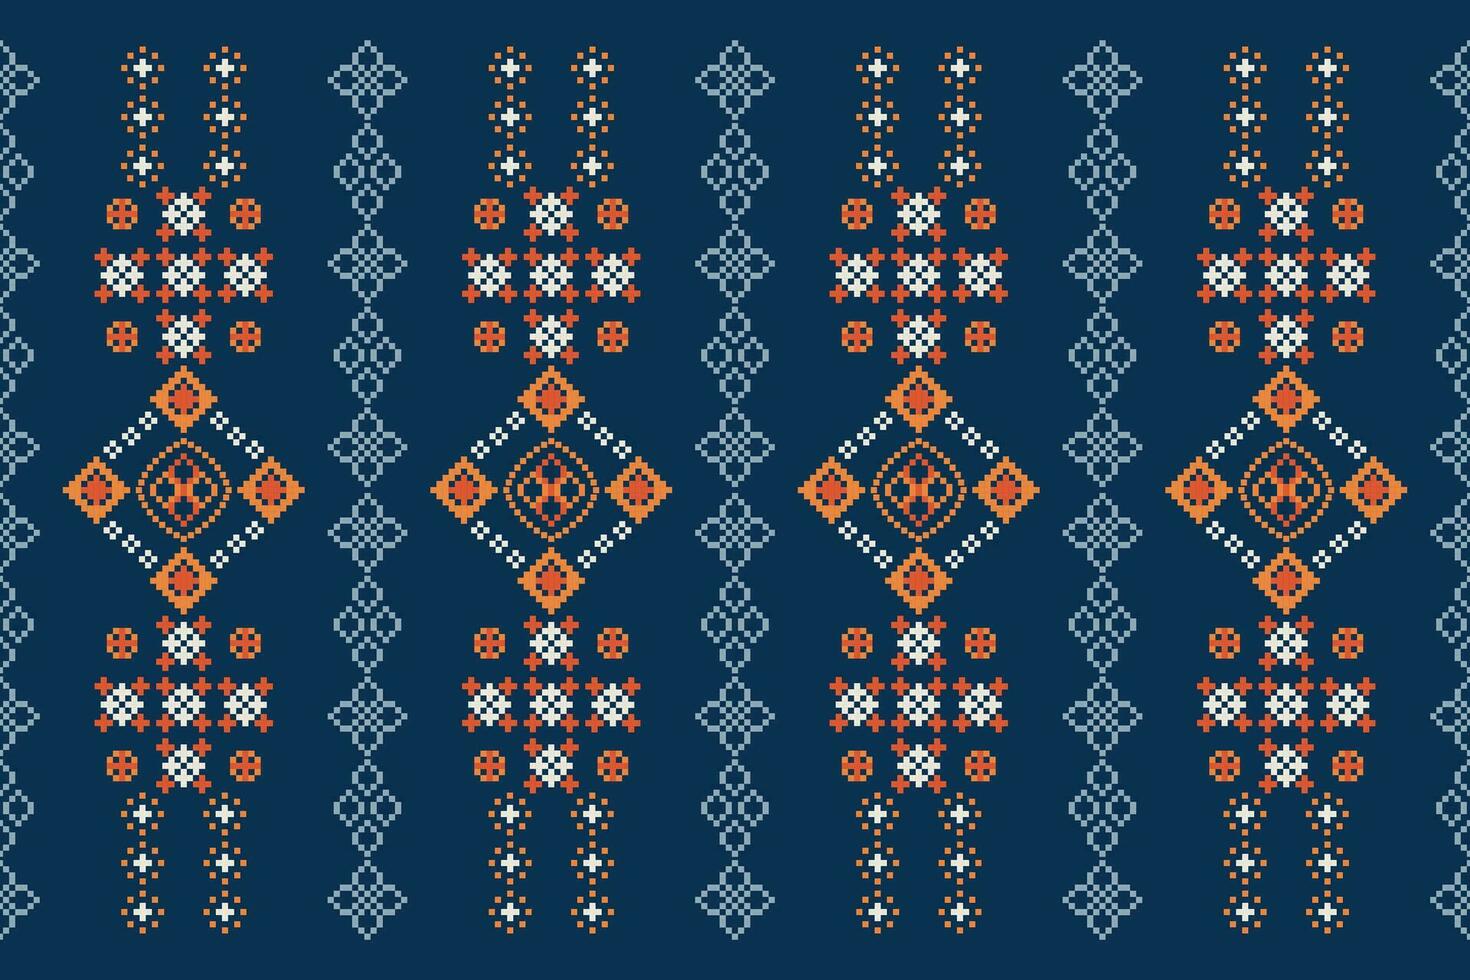 etnisch meetkundig kleding stof patroon kruis steek.ikat borduurwerk etnisch oosters pixel patroon blauw achtergrond. abstract,vector,illustratie. textuur,kleding,lijst,decoratie,motieven,zijde behang. vector